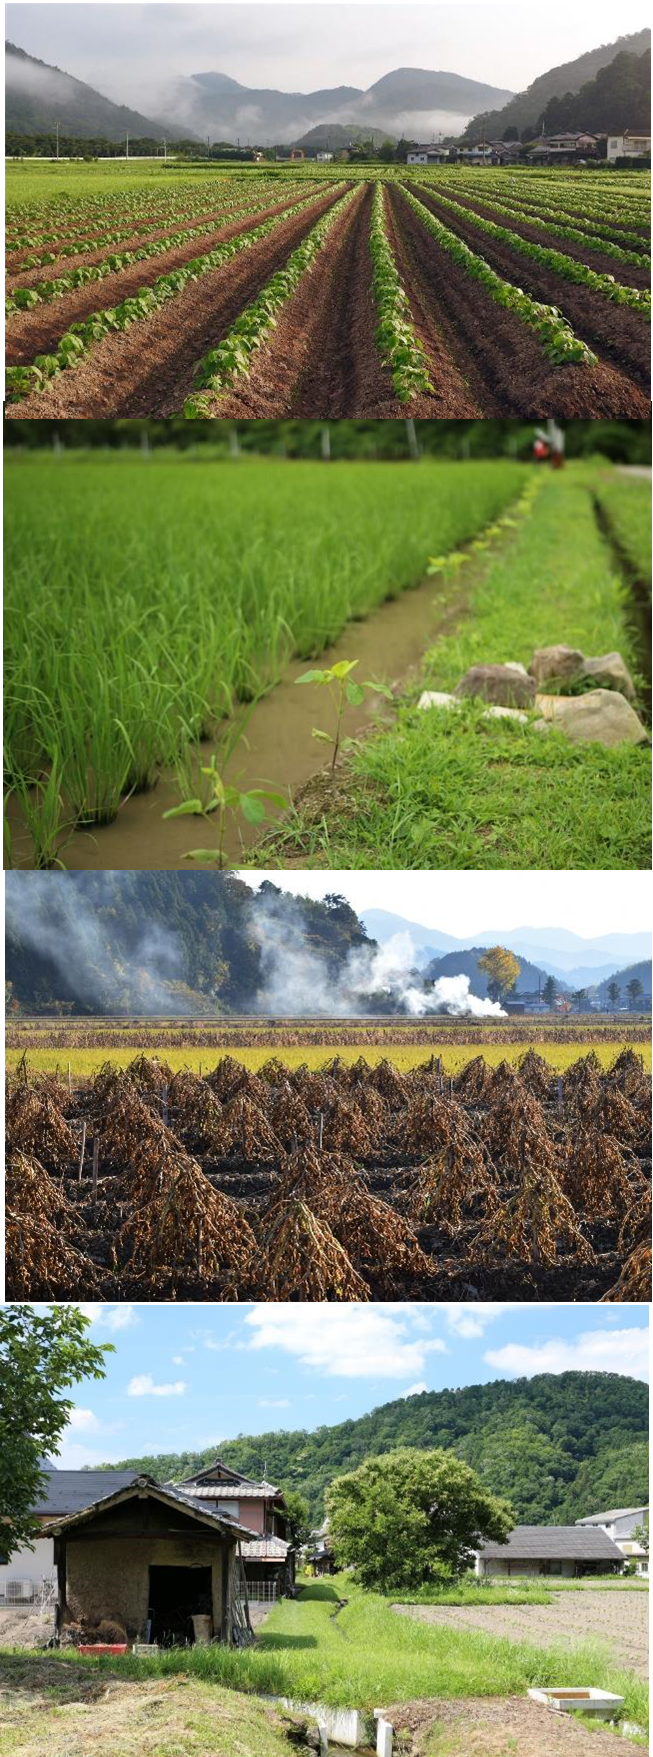 日本農業遺産に登録する風景の写真、高畝栽培、畦畔栽培（畦豆）、黒豆栽培、灰小屋と土水路